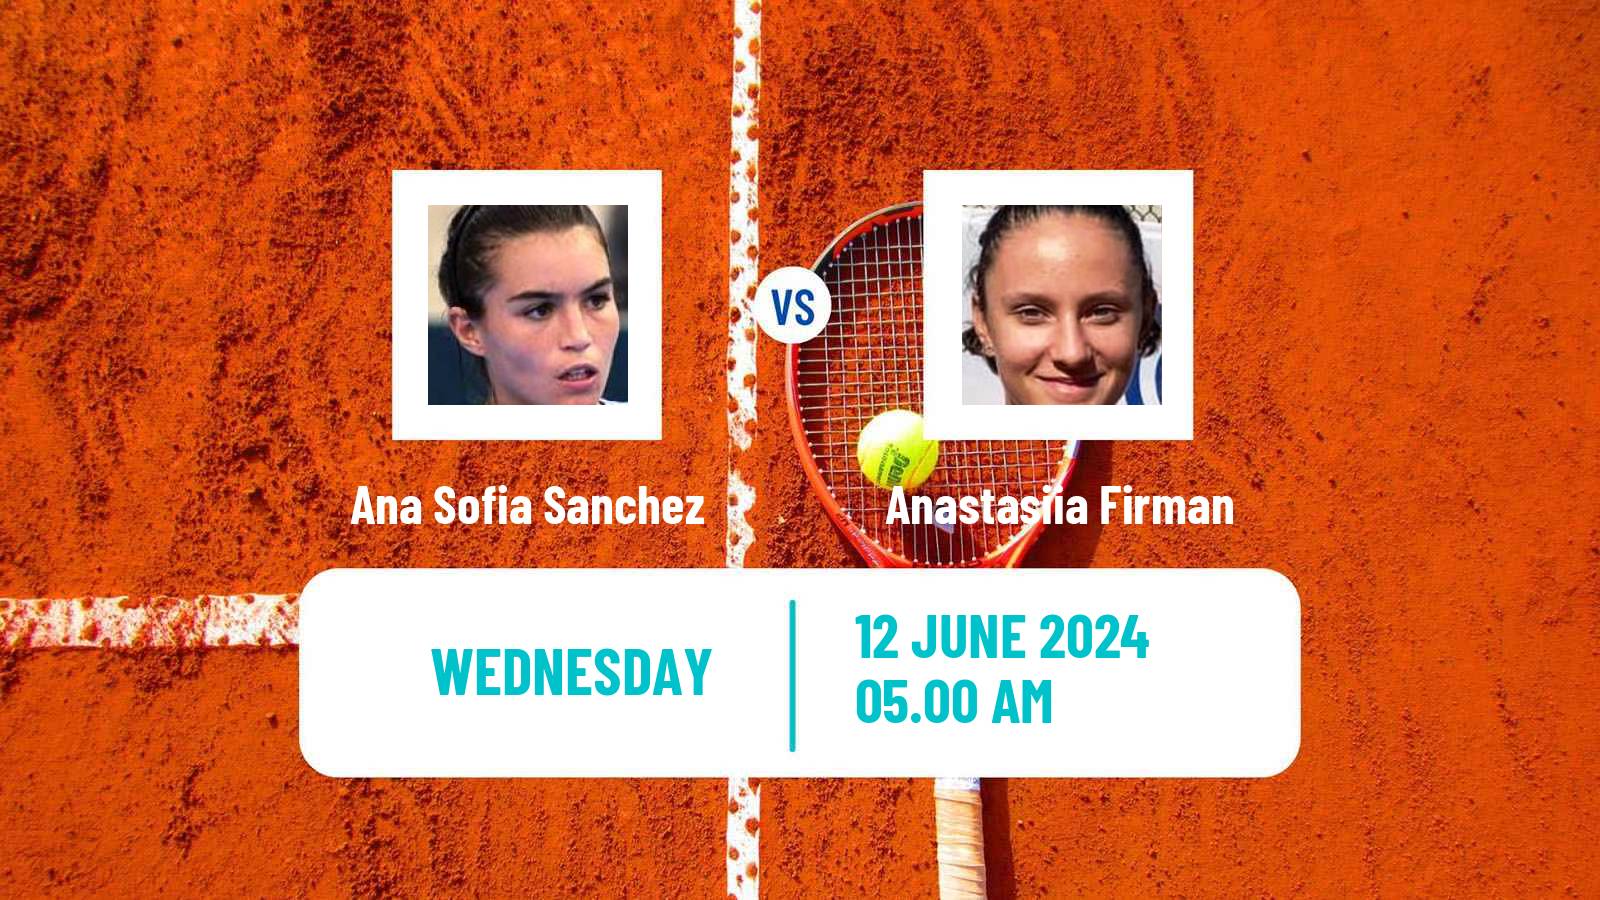 Tennis ITF W35 Gdansk Women Ana Sofia Sanchez - Anastasiia Firman